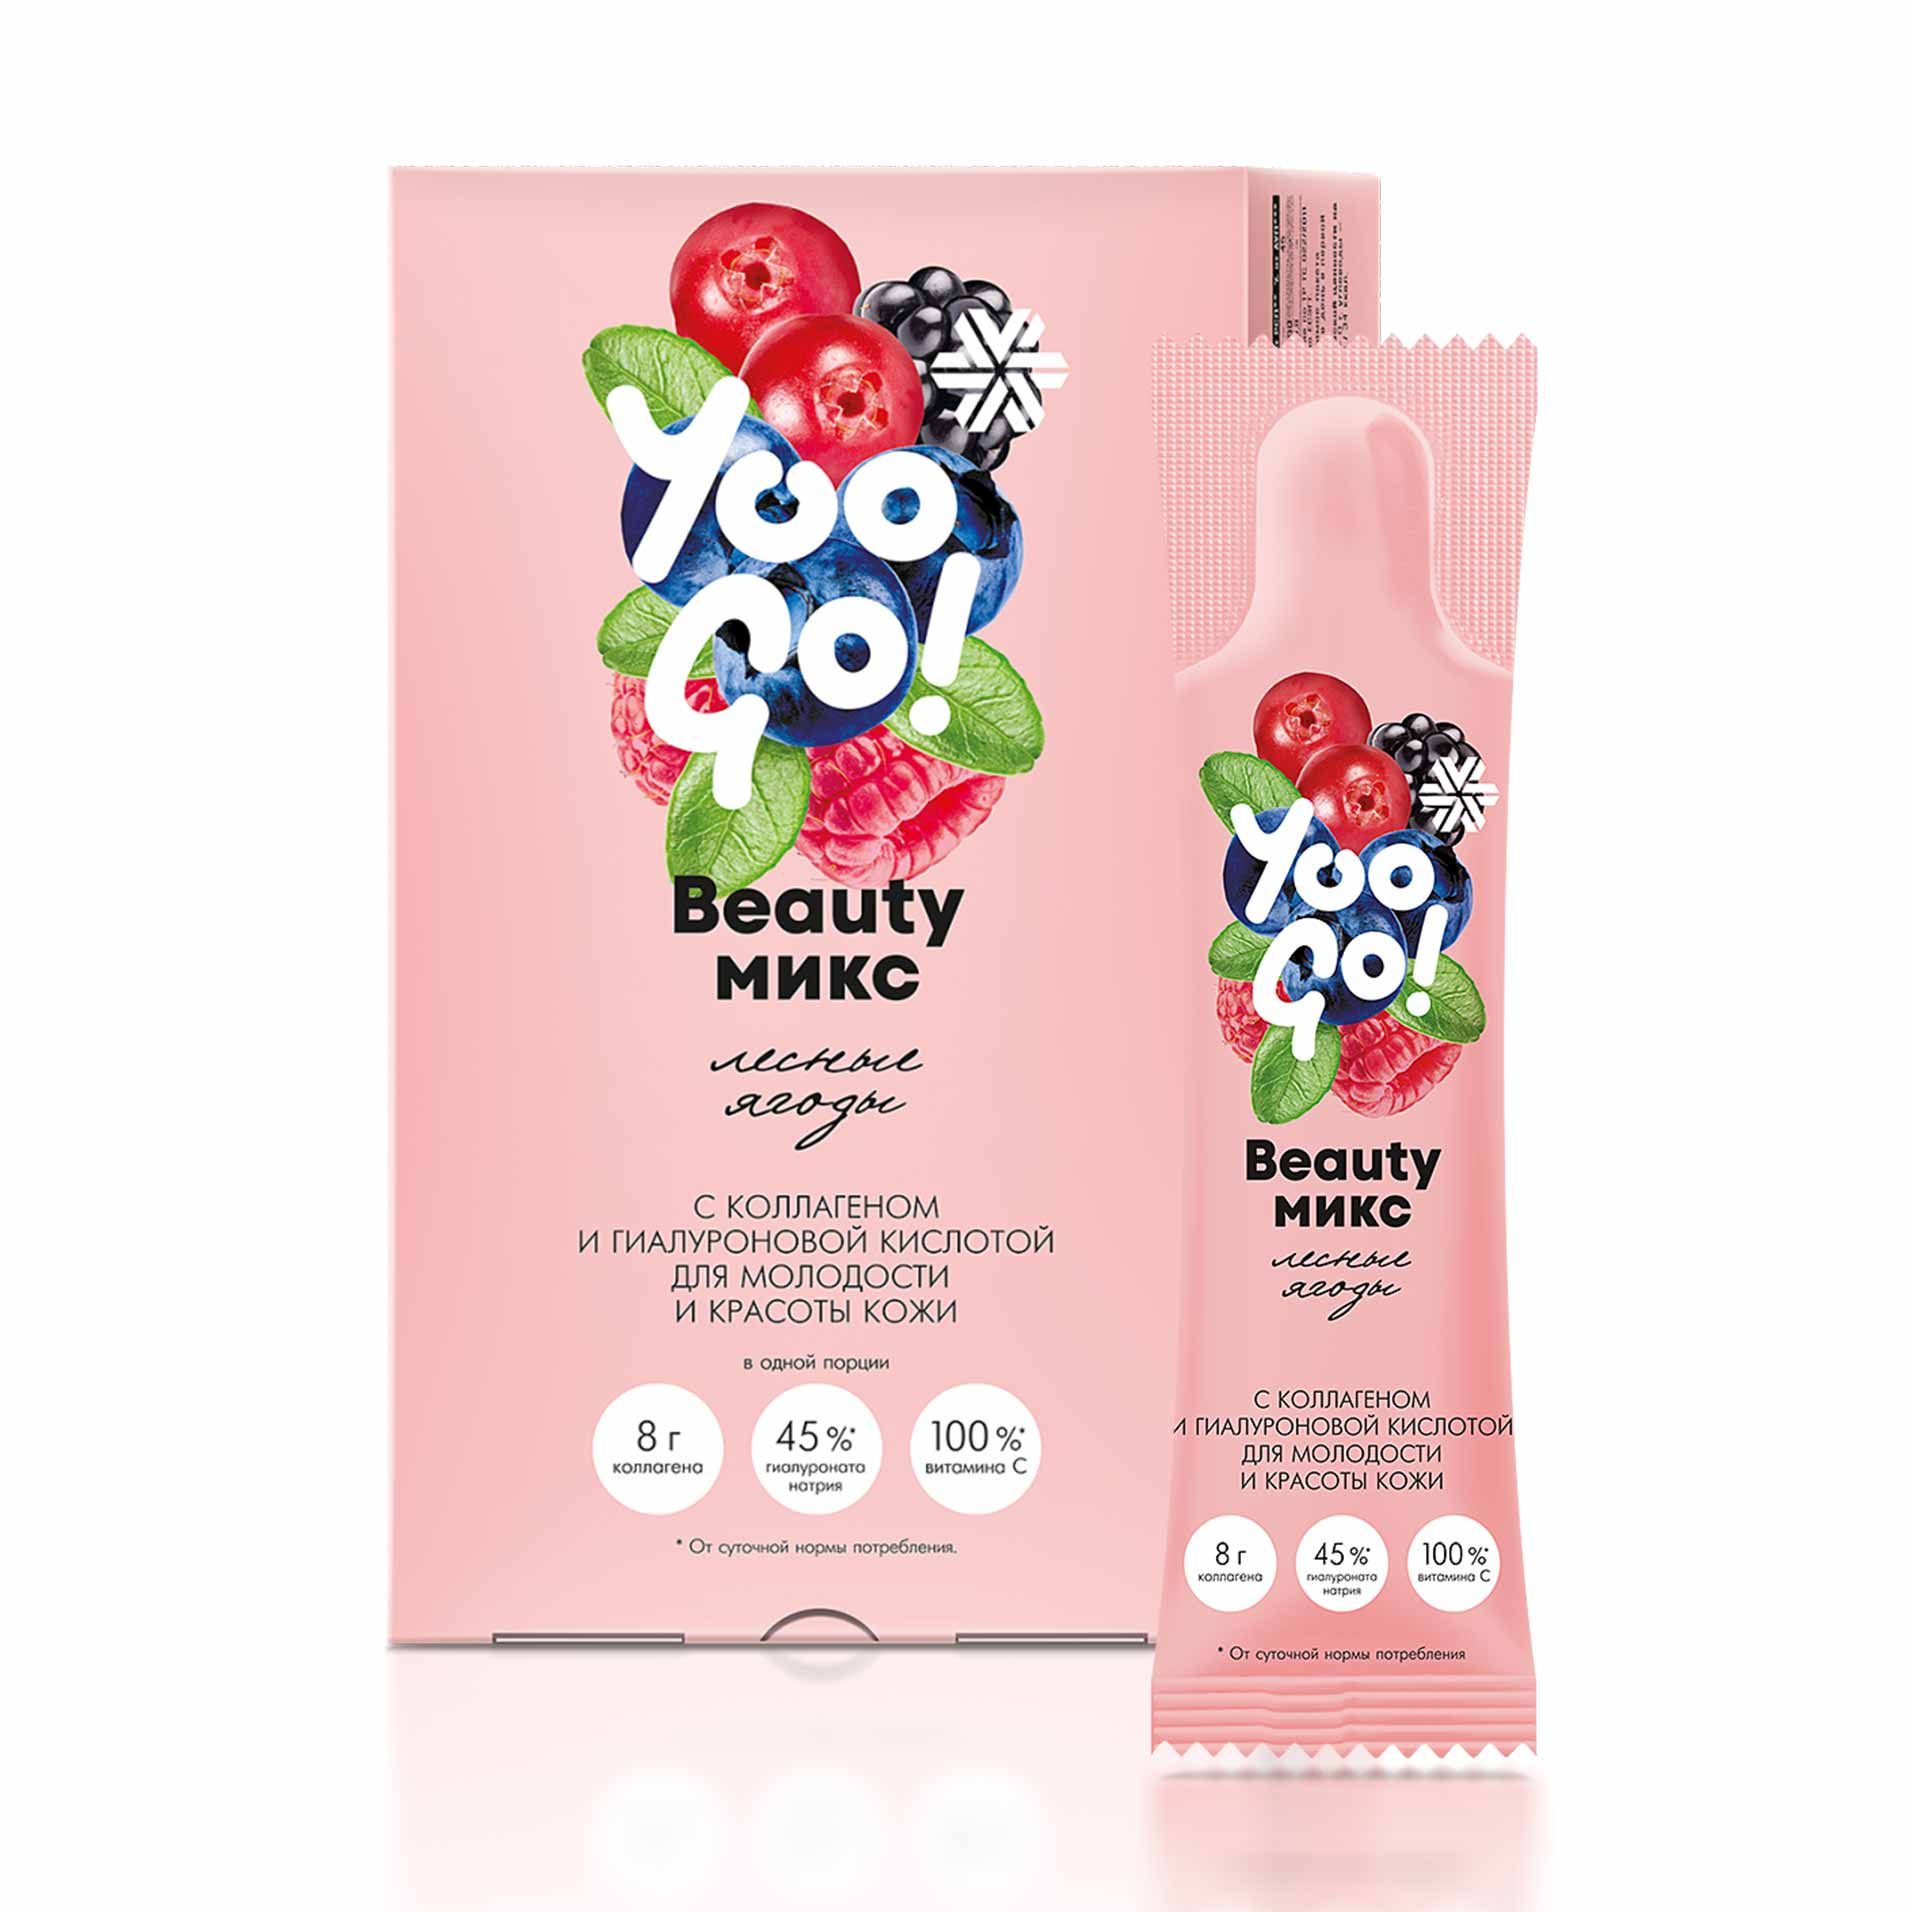 Yoo Gо - Beauty-микс (лесные ягоды)